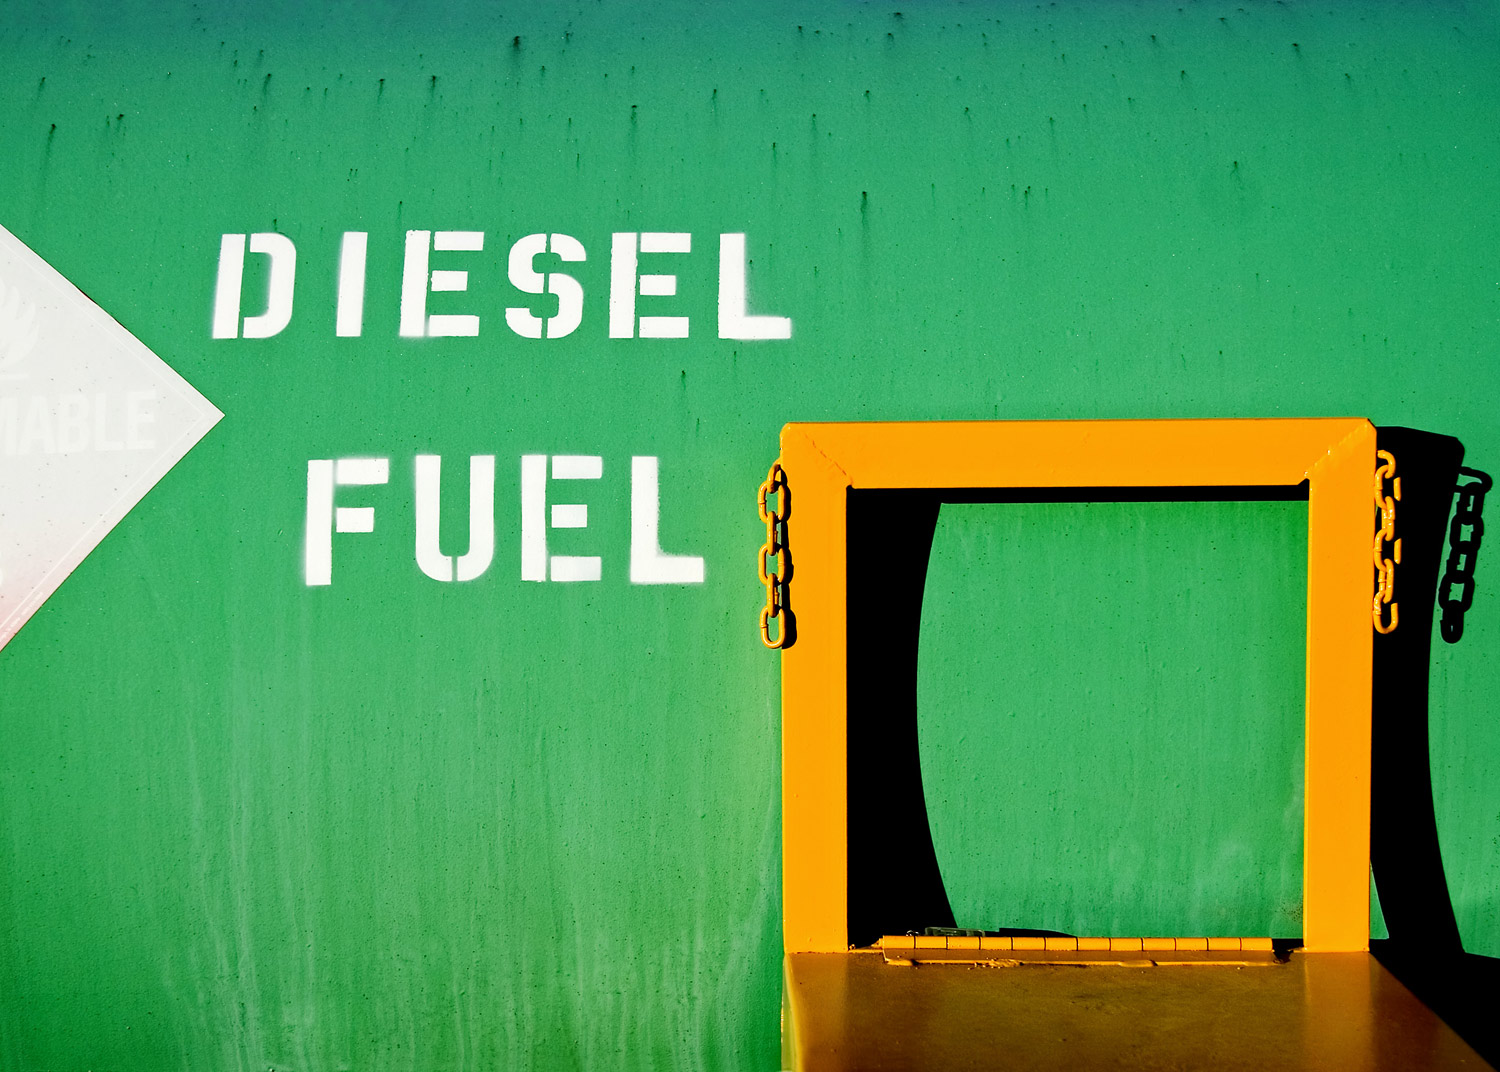 Diesel Fuel